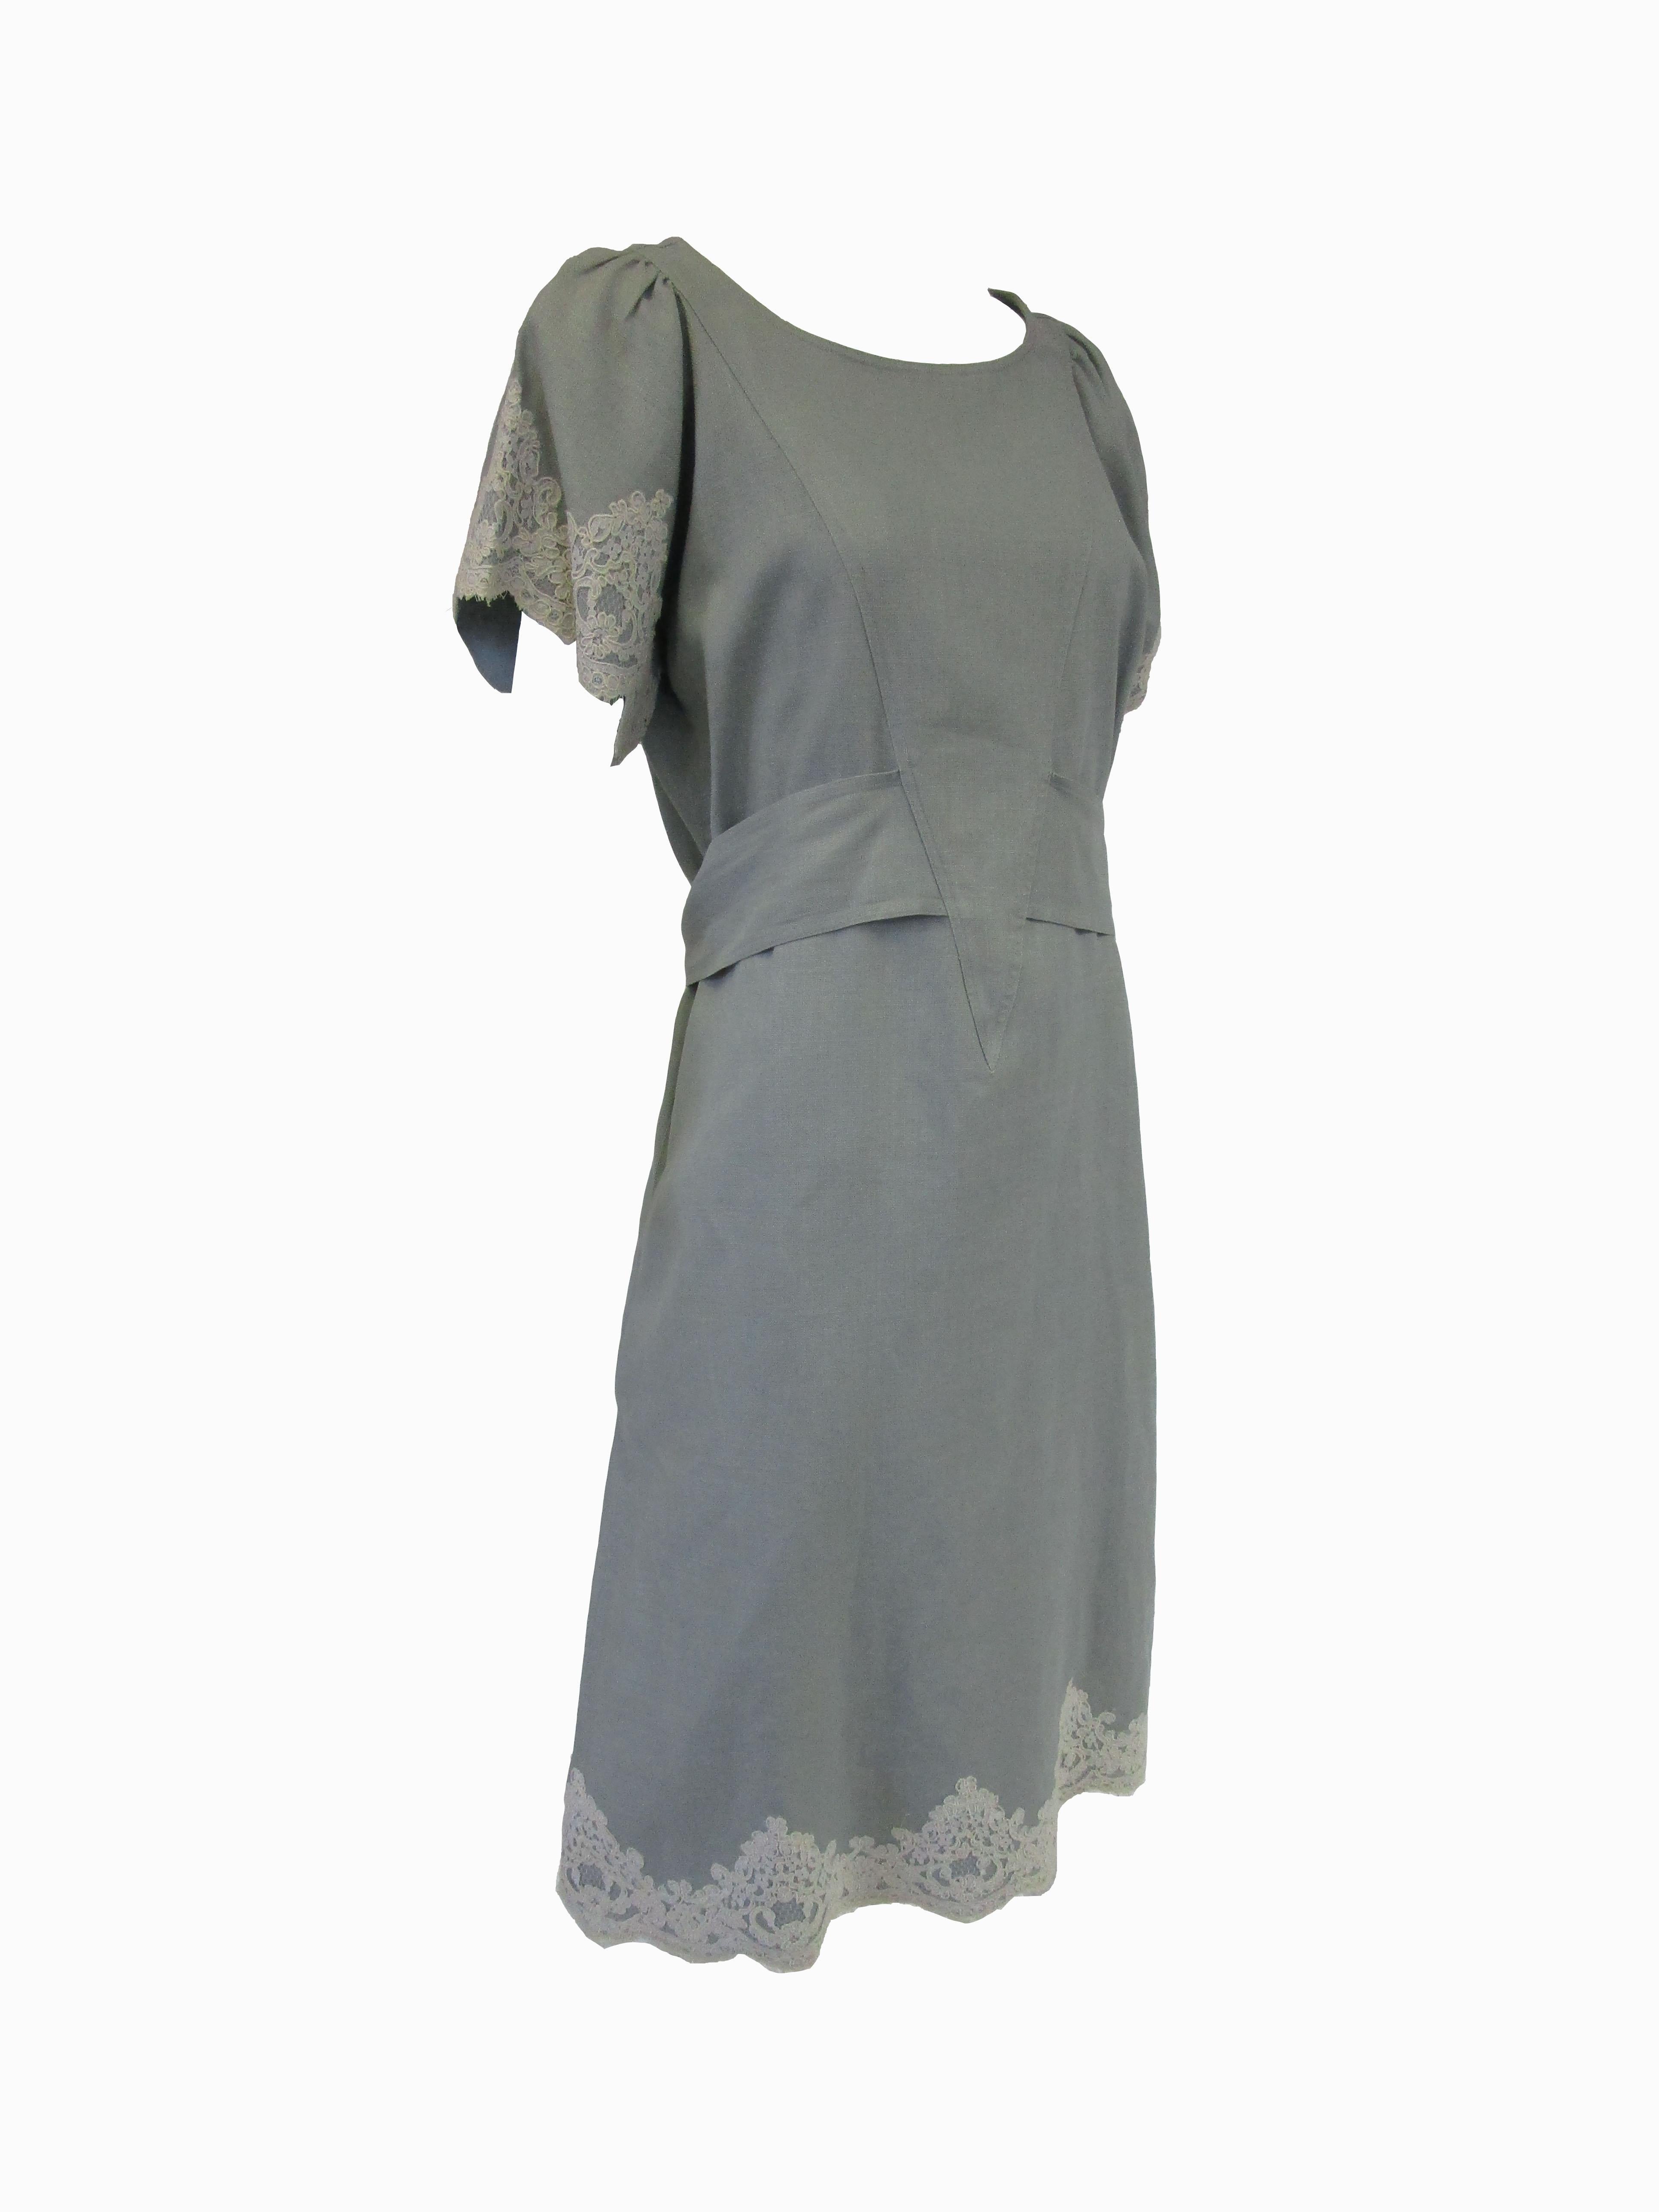 Women's 1980s Geoffrey Beene Slate Blue Linen & Lace Dress For Sale